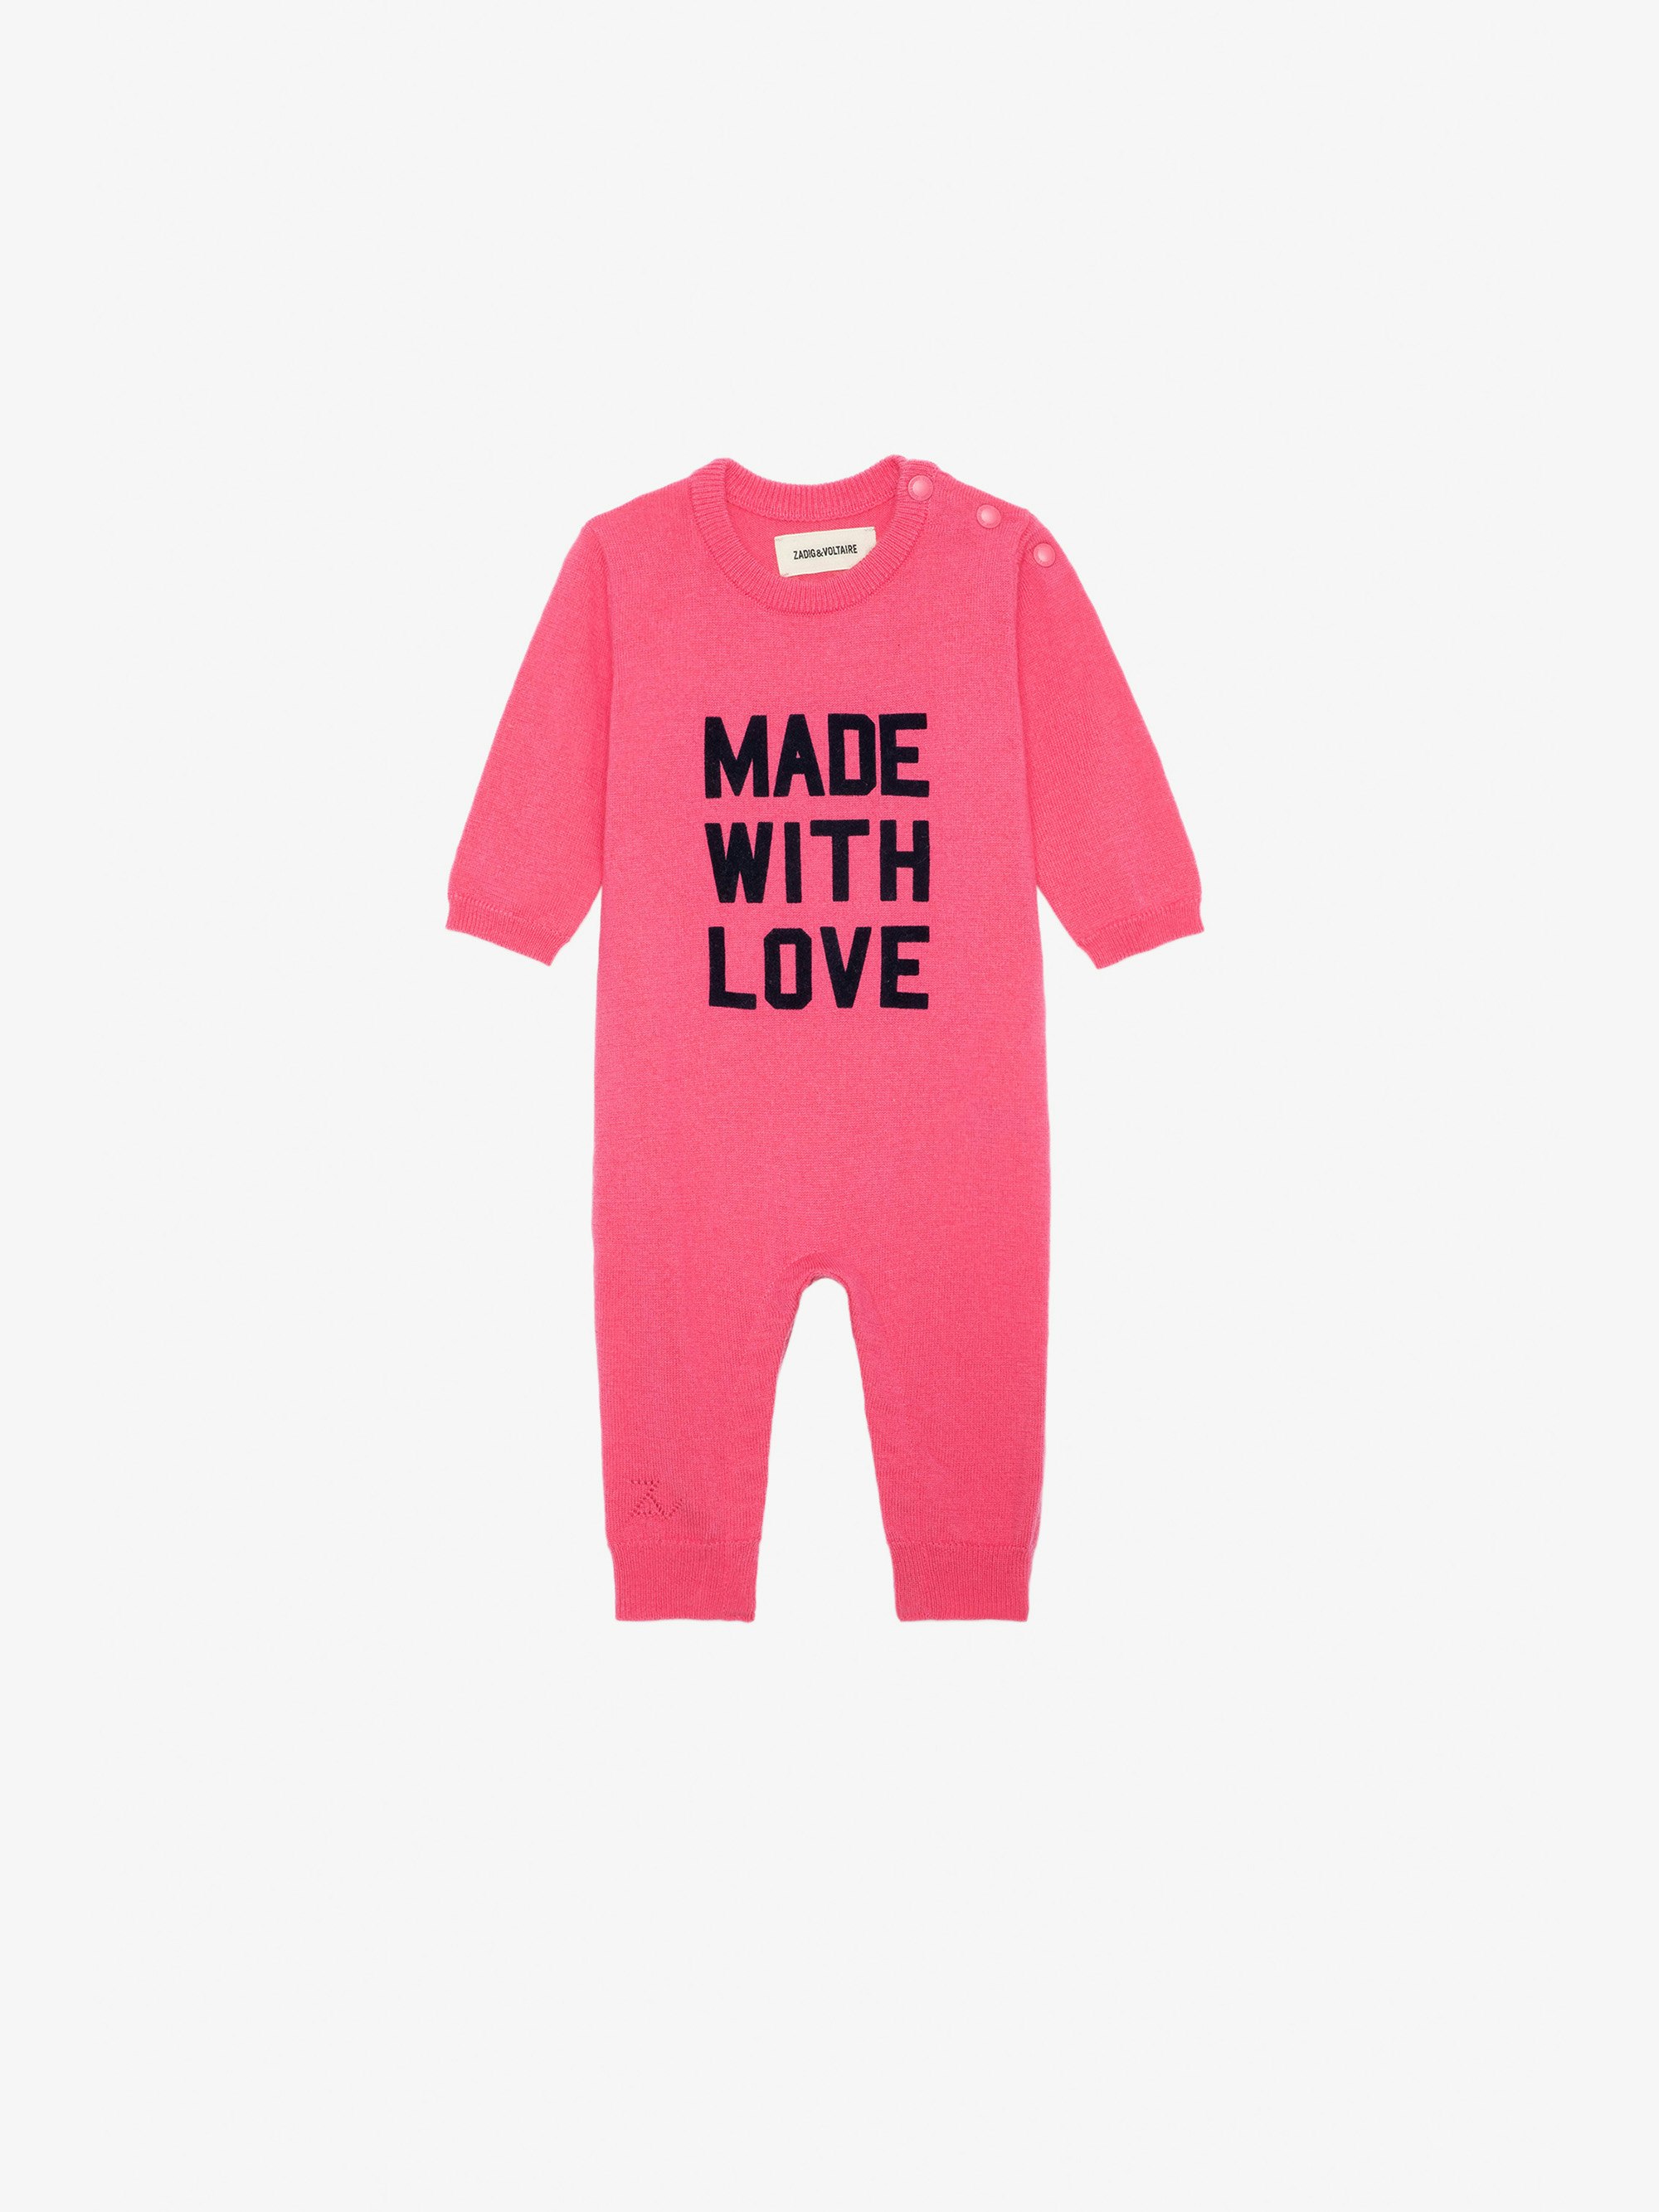 Combinaison Didou Bébé - Combinaison en maille tricot rose à message "Made With Love" bébé.